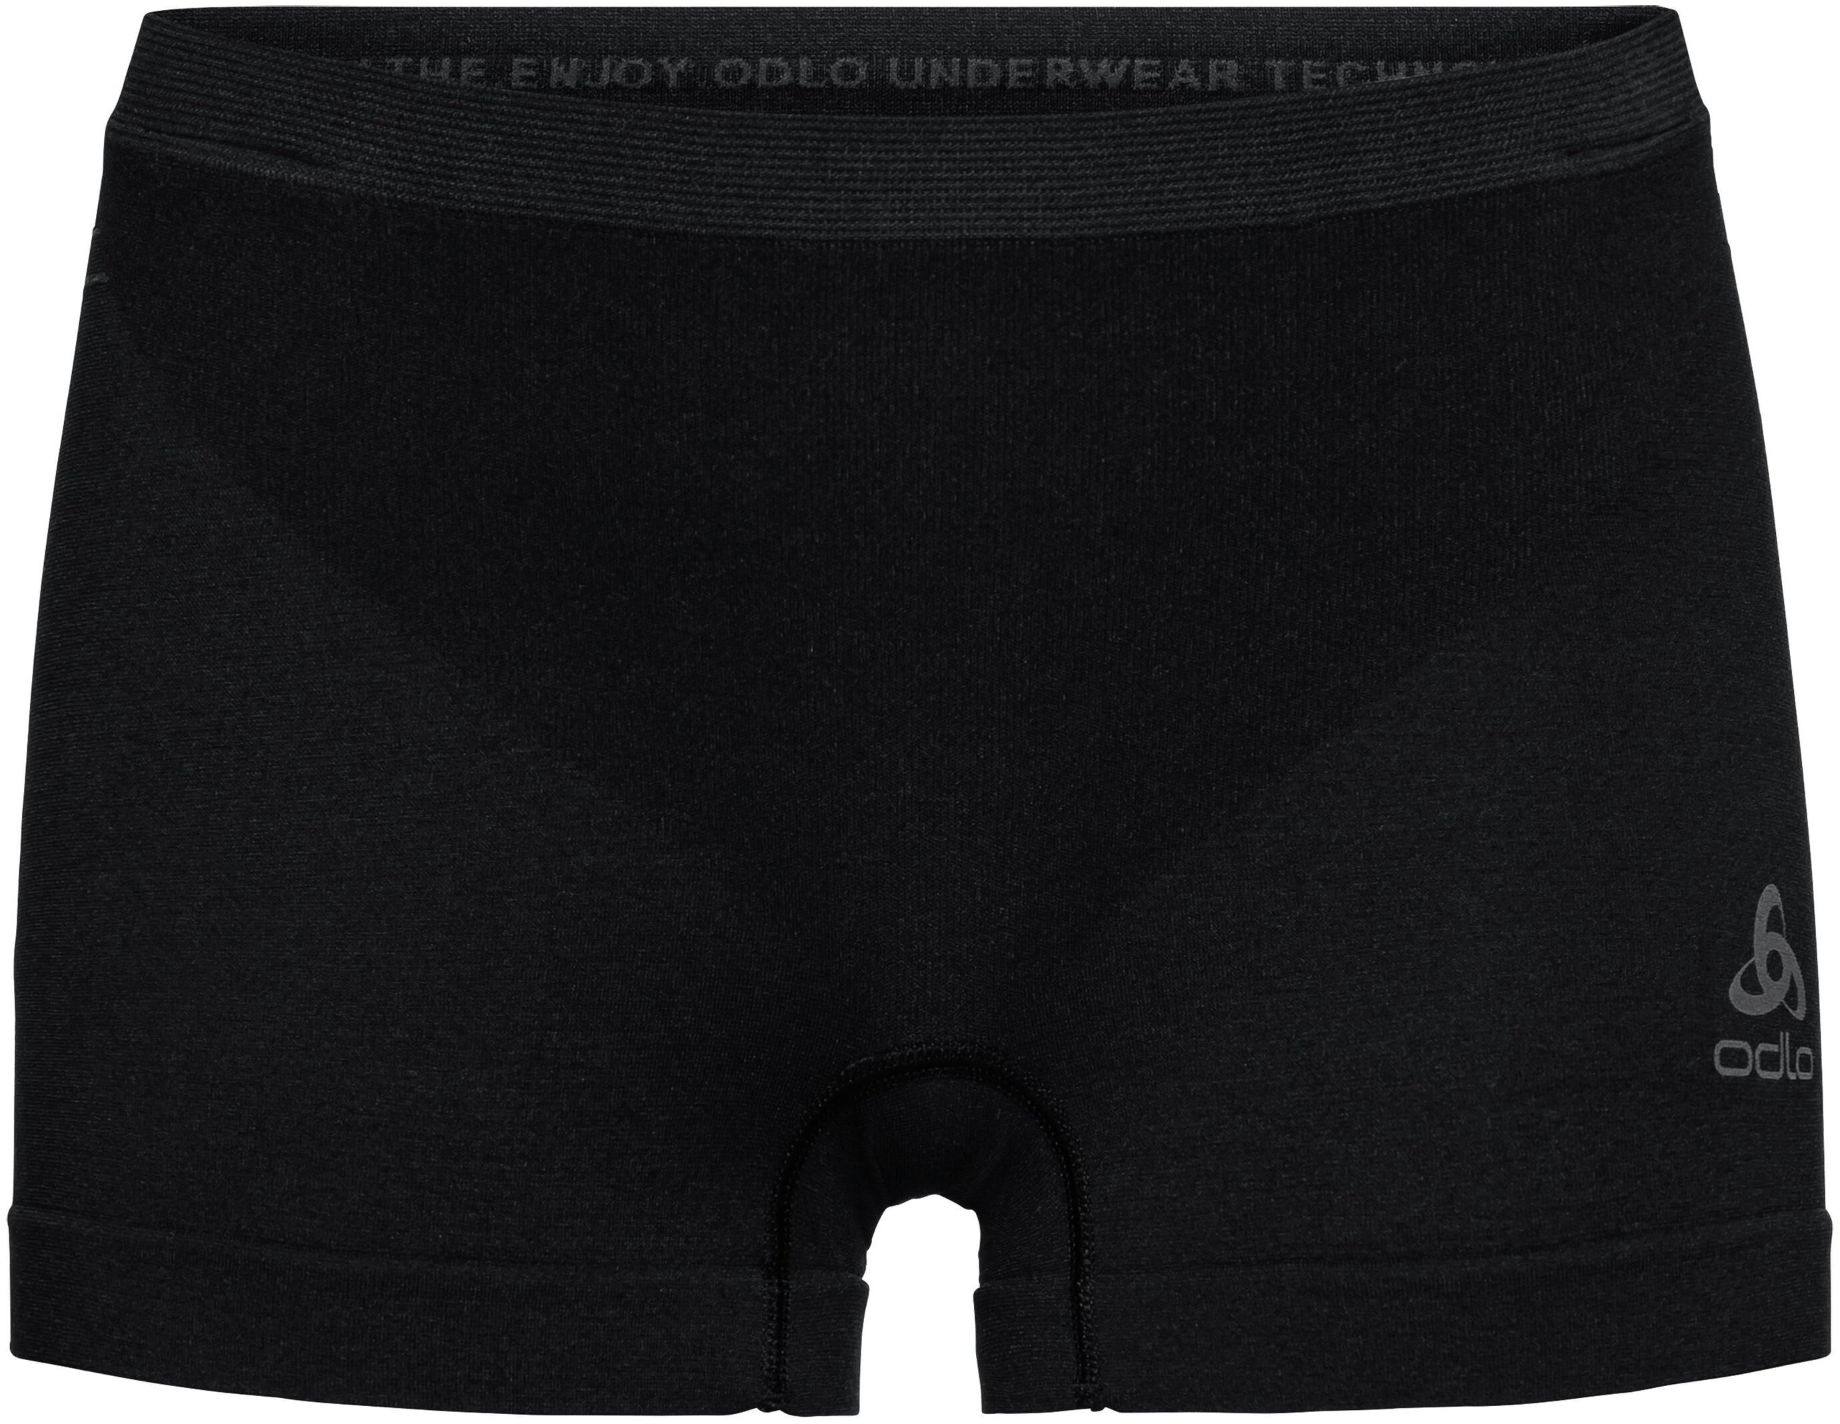 Odlo Women’s Performance Light Sports-Underwear Panty